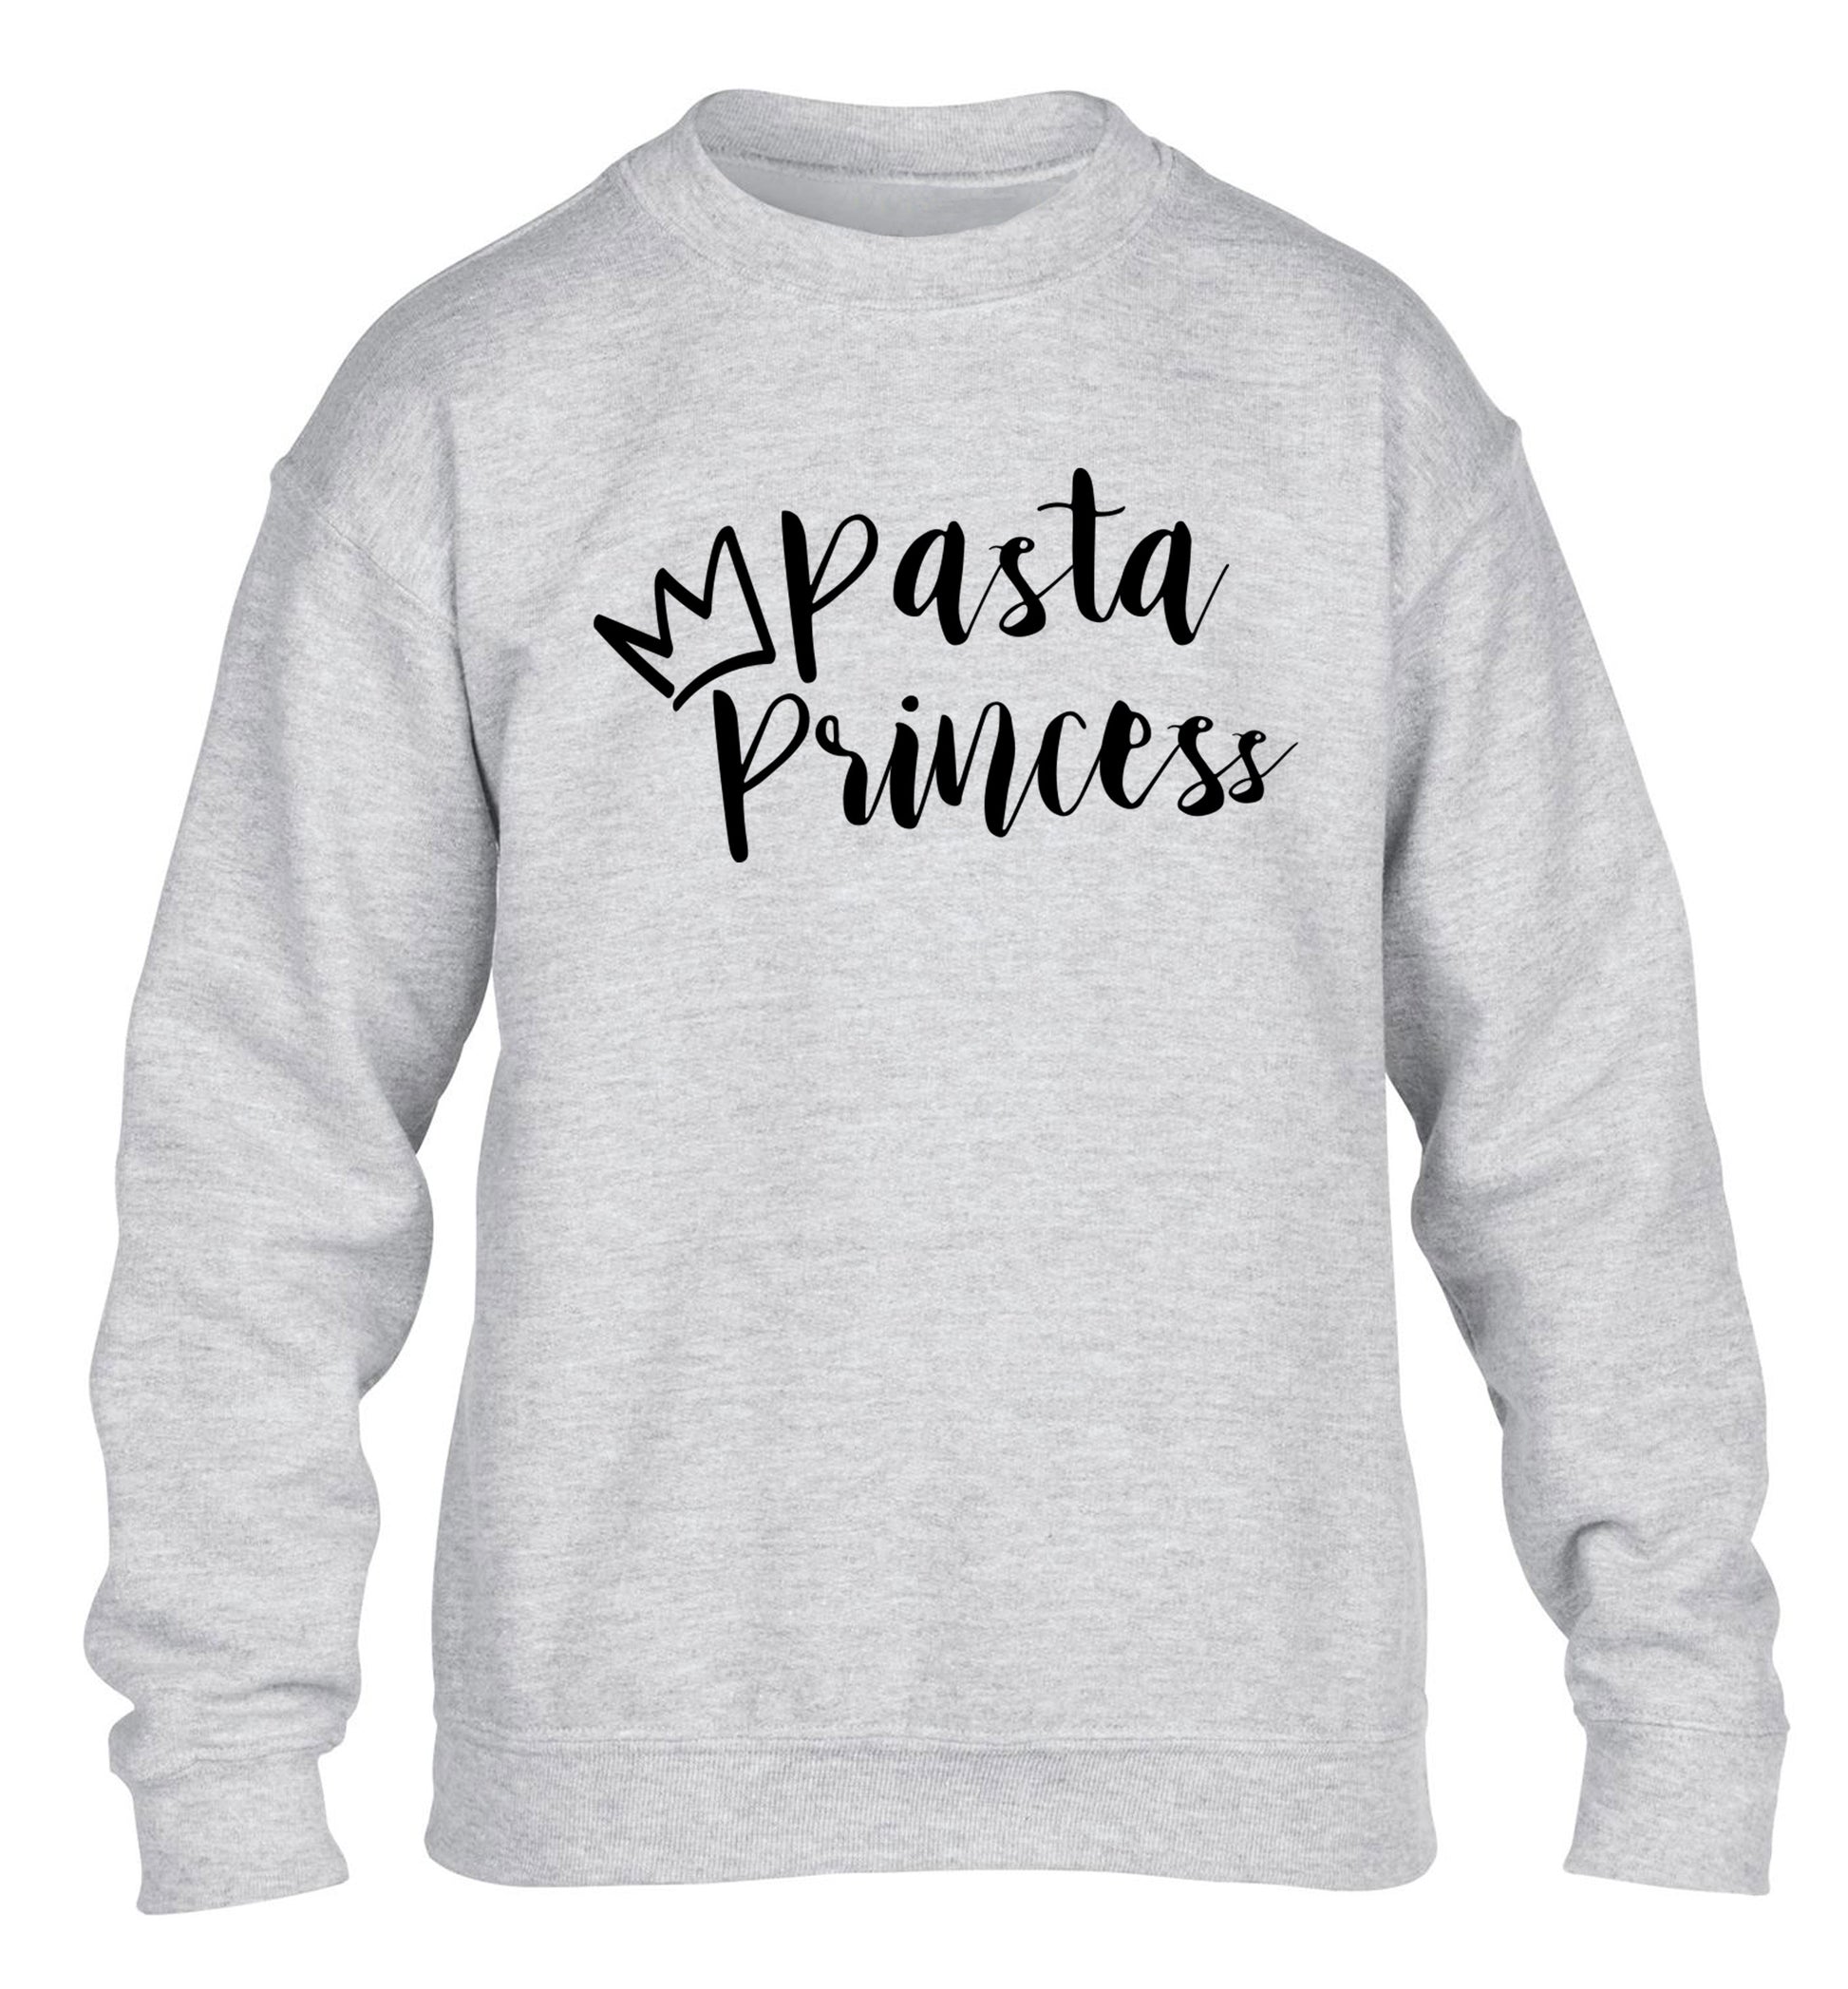 Pasta Princess children's grey sweater 12-14 Years